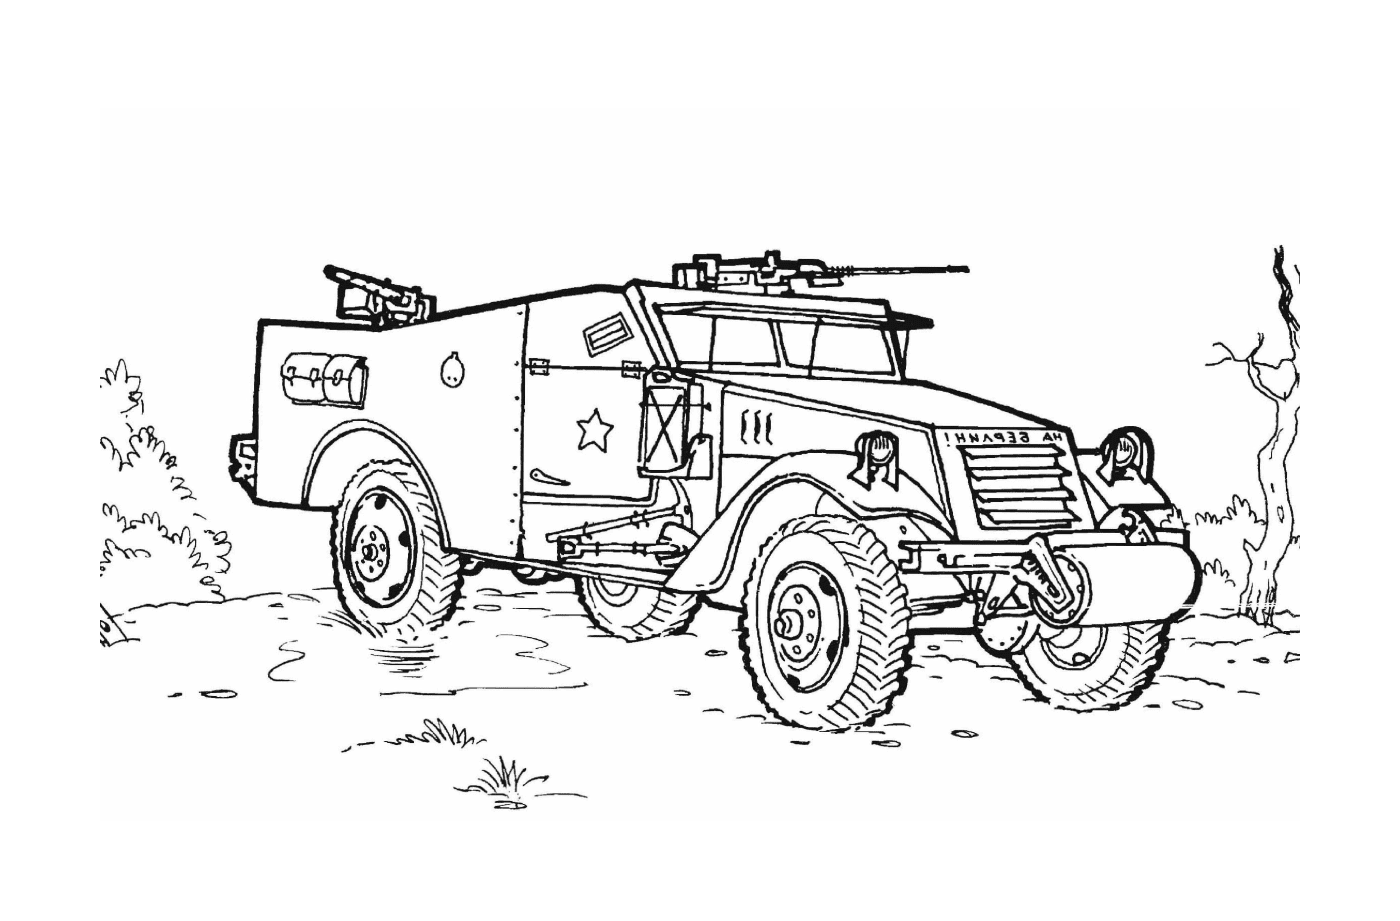   Véhicule militaire avec armes : un vieux véhicule militaire dessiné 